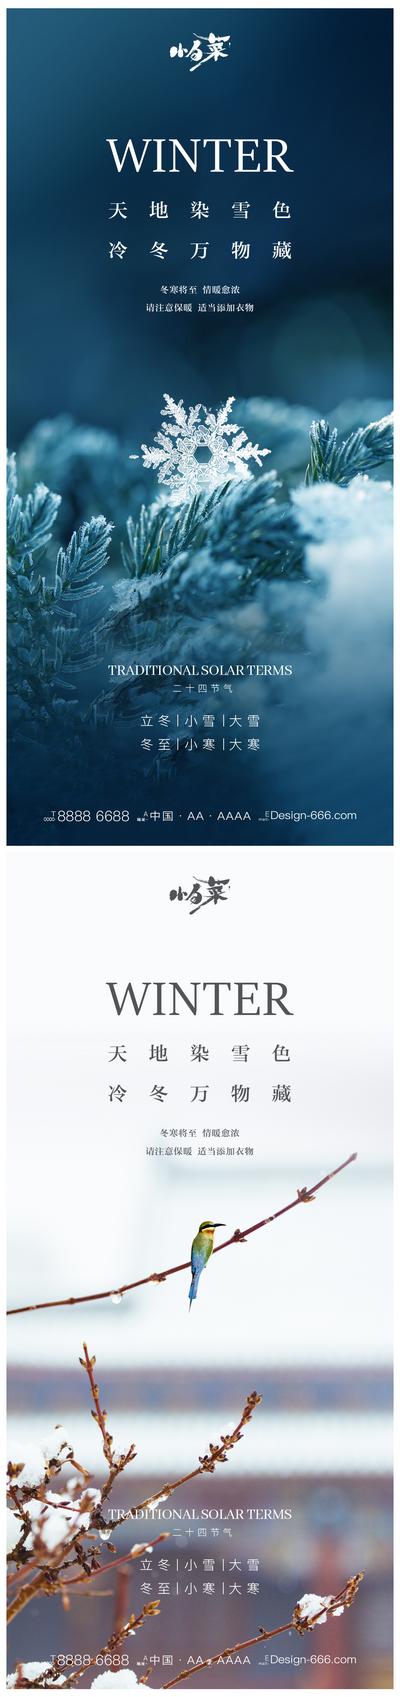 【南门网】海报 二十四节气 立冬 小雪 大雪 冬至 小寒 大寒 雪花 雪景